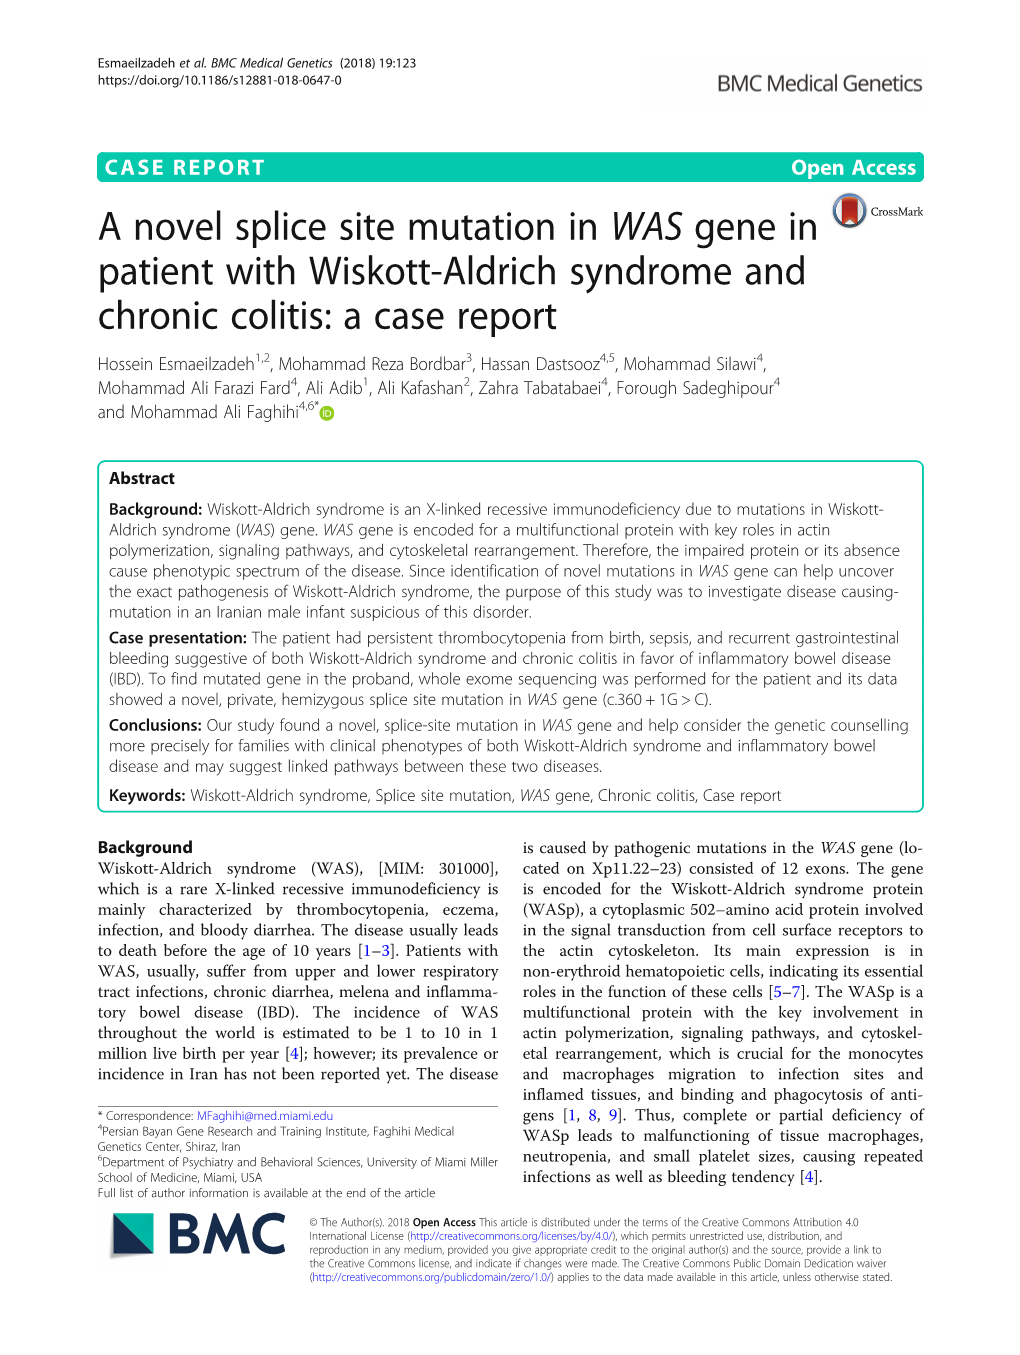 A Novel Splice Site Mutation in WAS Gene in Patient with Wiskott-Aldrich